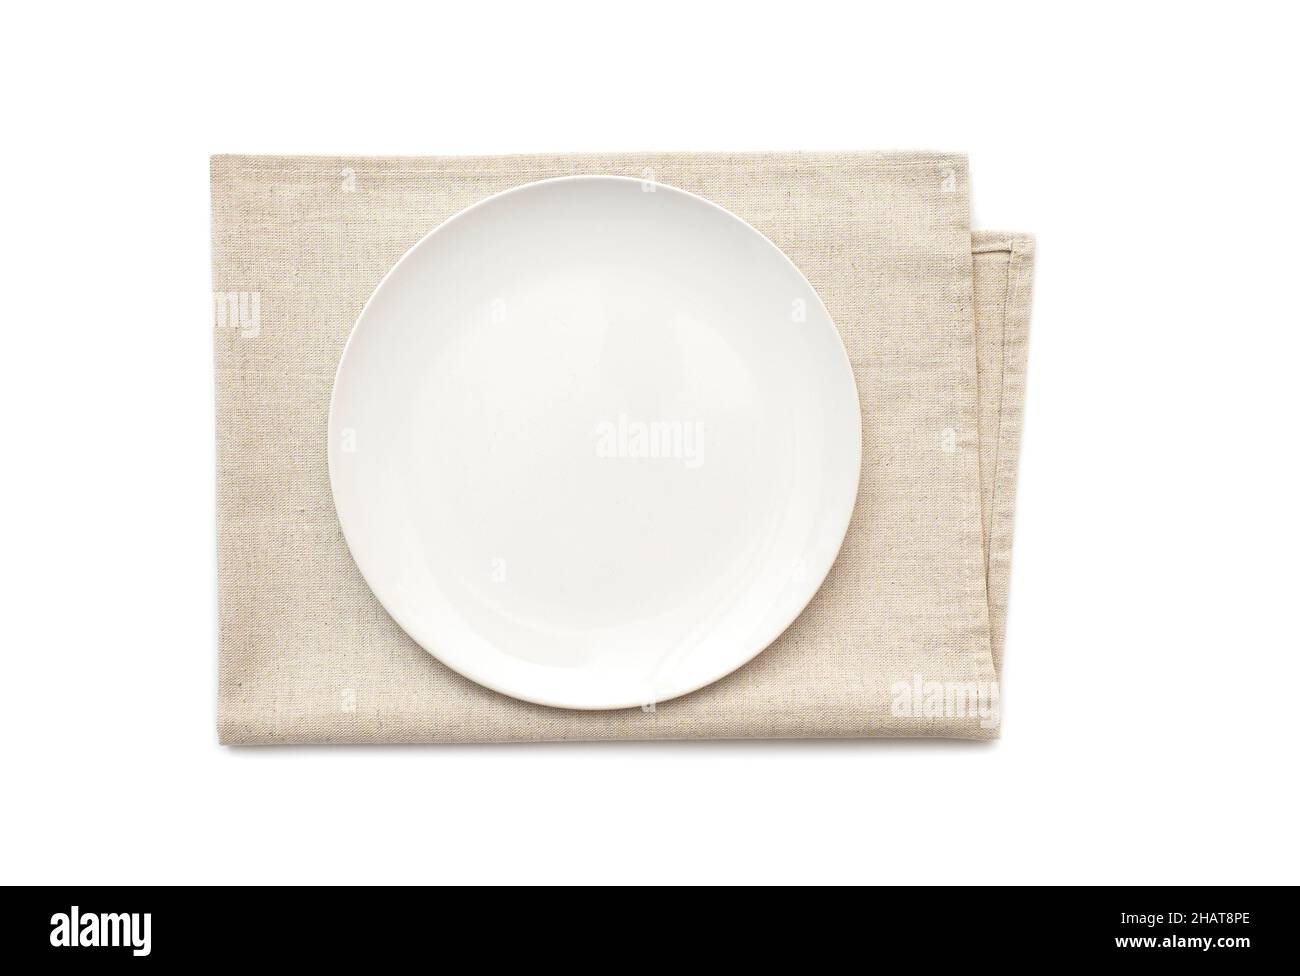 Teller-Mockup, Keramikplatte auf einem Küchentuch, Serviette isoliert auf weiß. Draufsicht Stockfoto